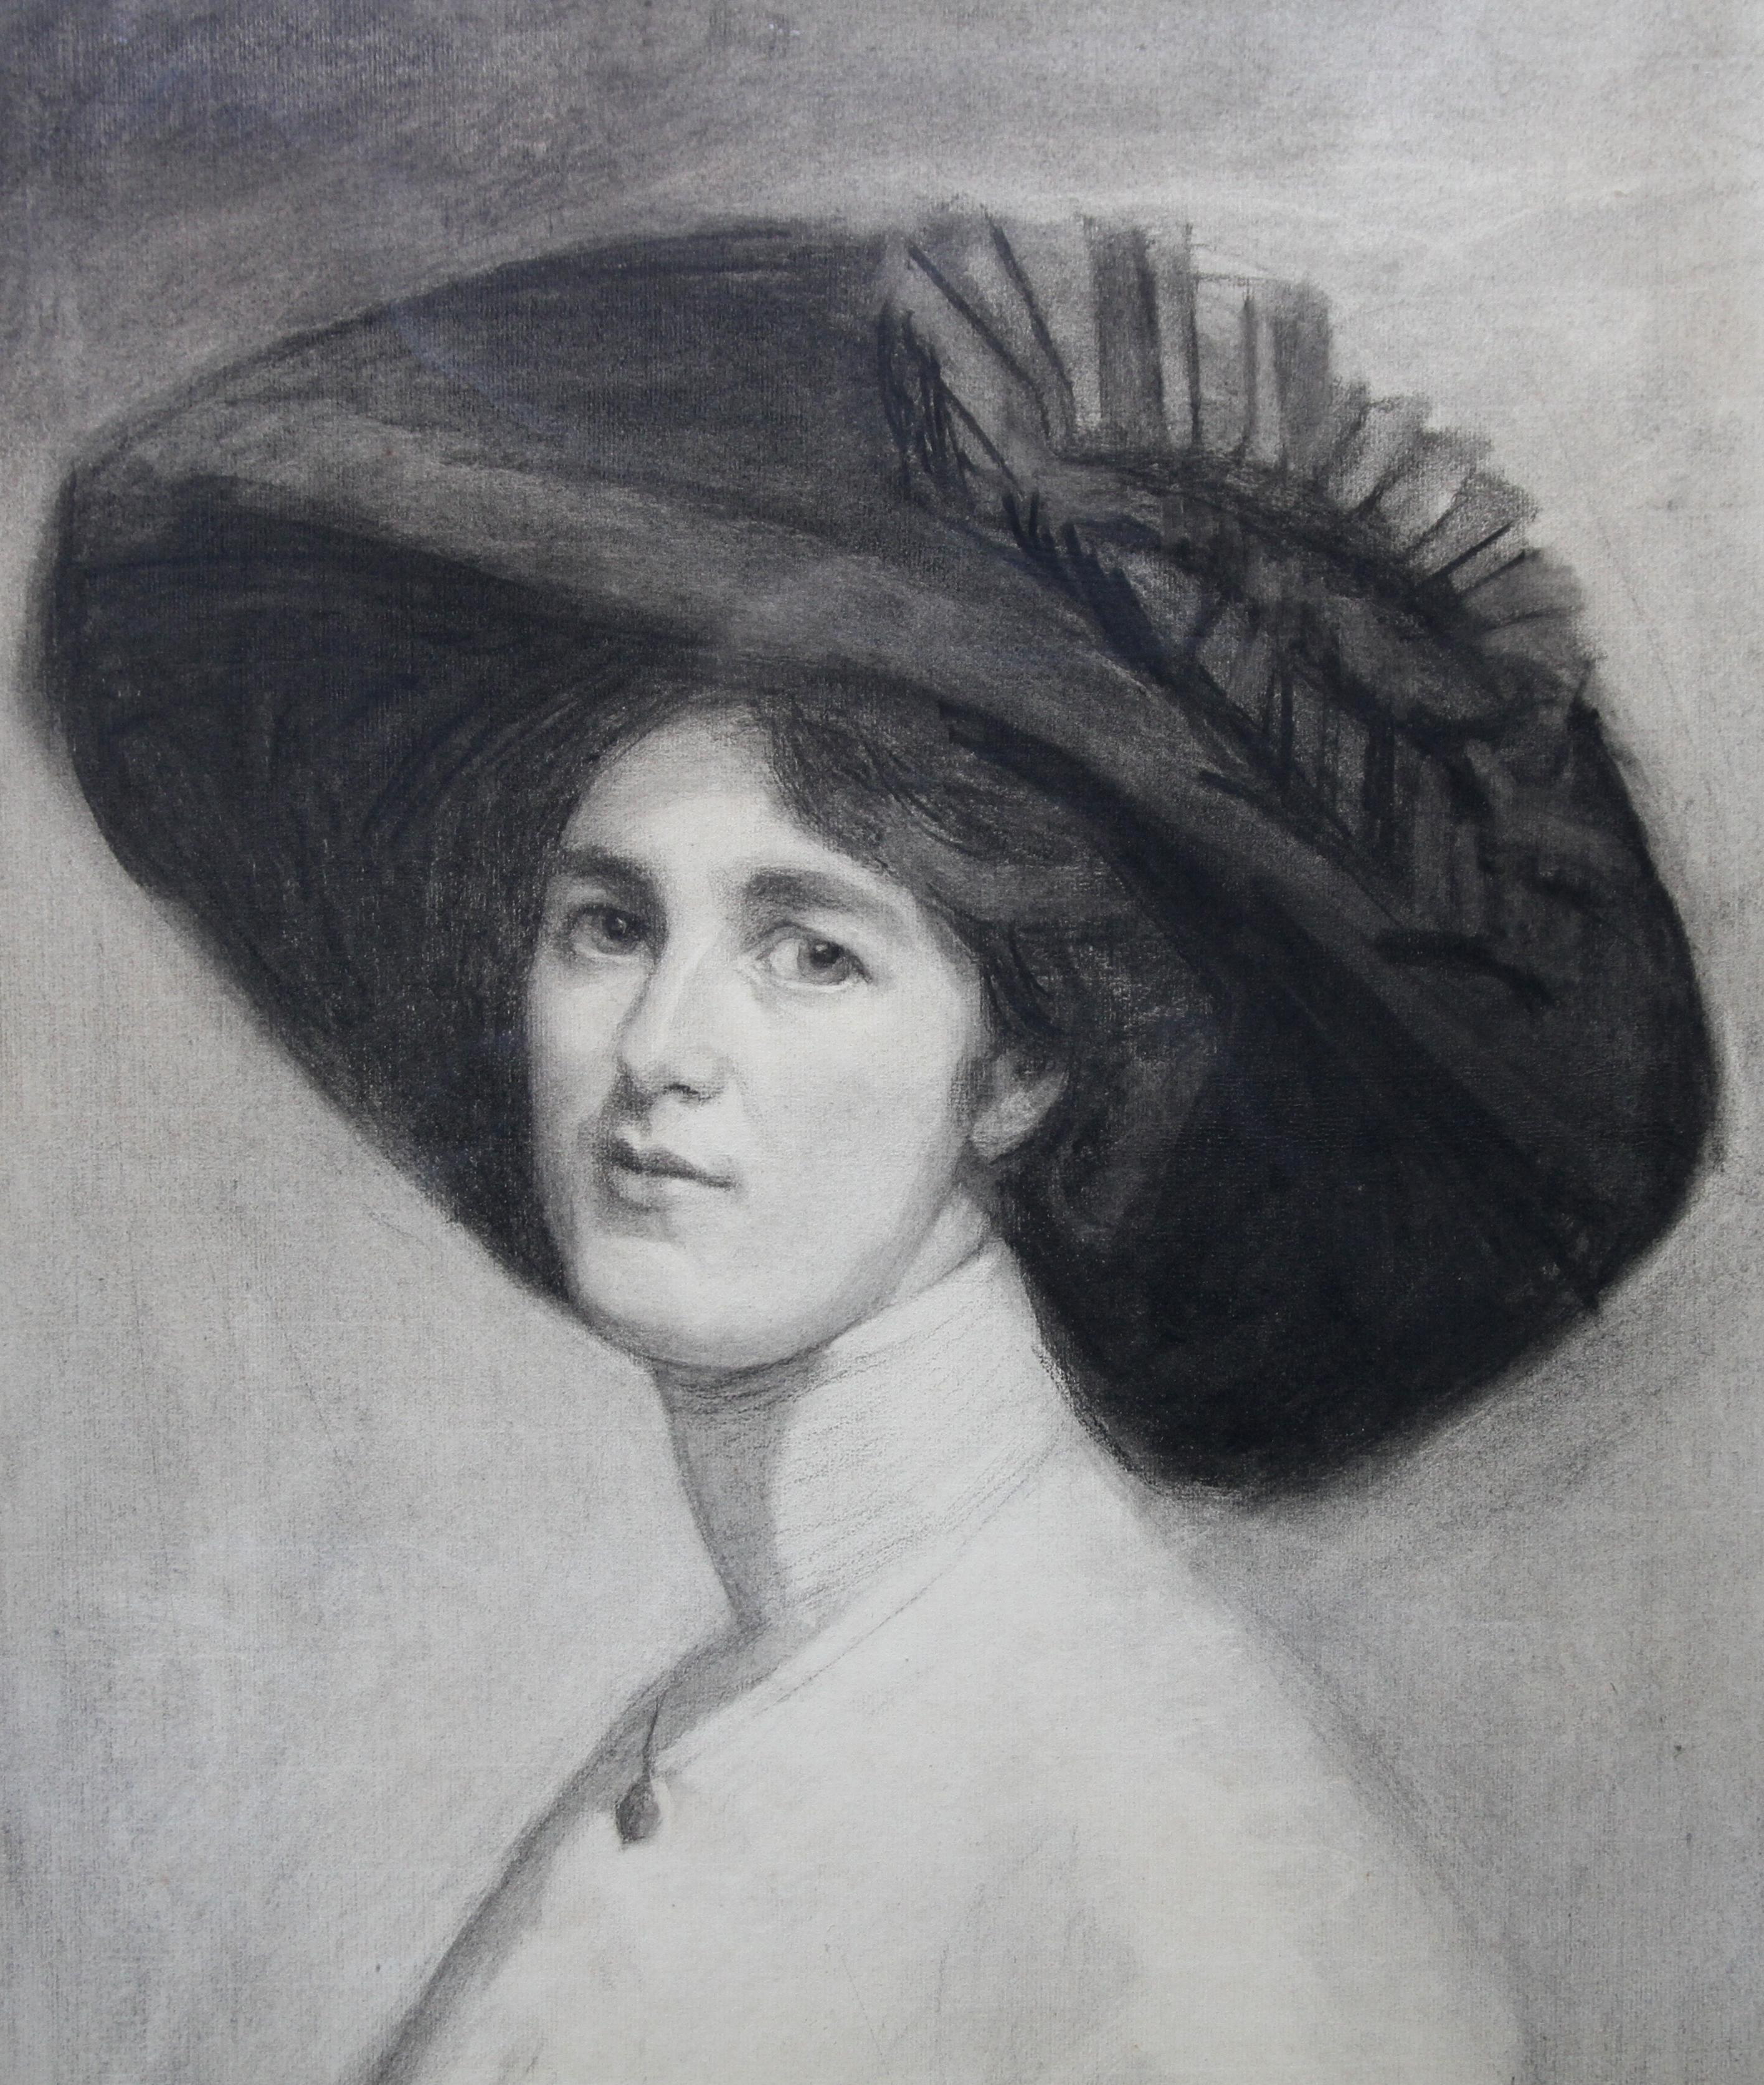 Porträt von Decima Moore – Schauspielerin und Suffragette, edwardianische Zeichnung einer Künstlerin (Realismus), Art, von Maria Cowell nee Sayer